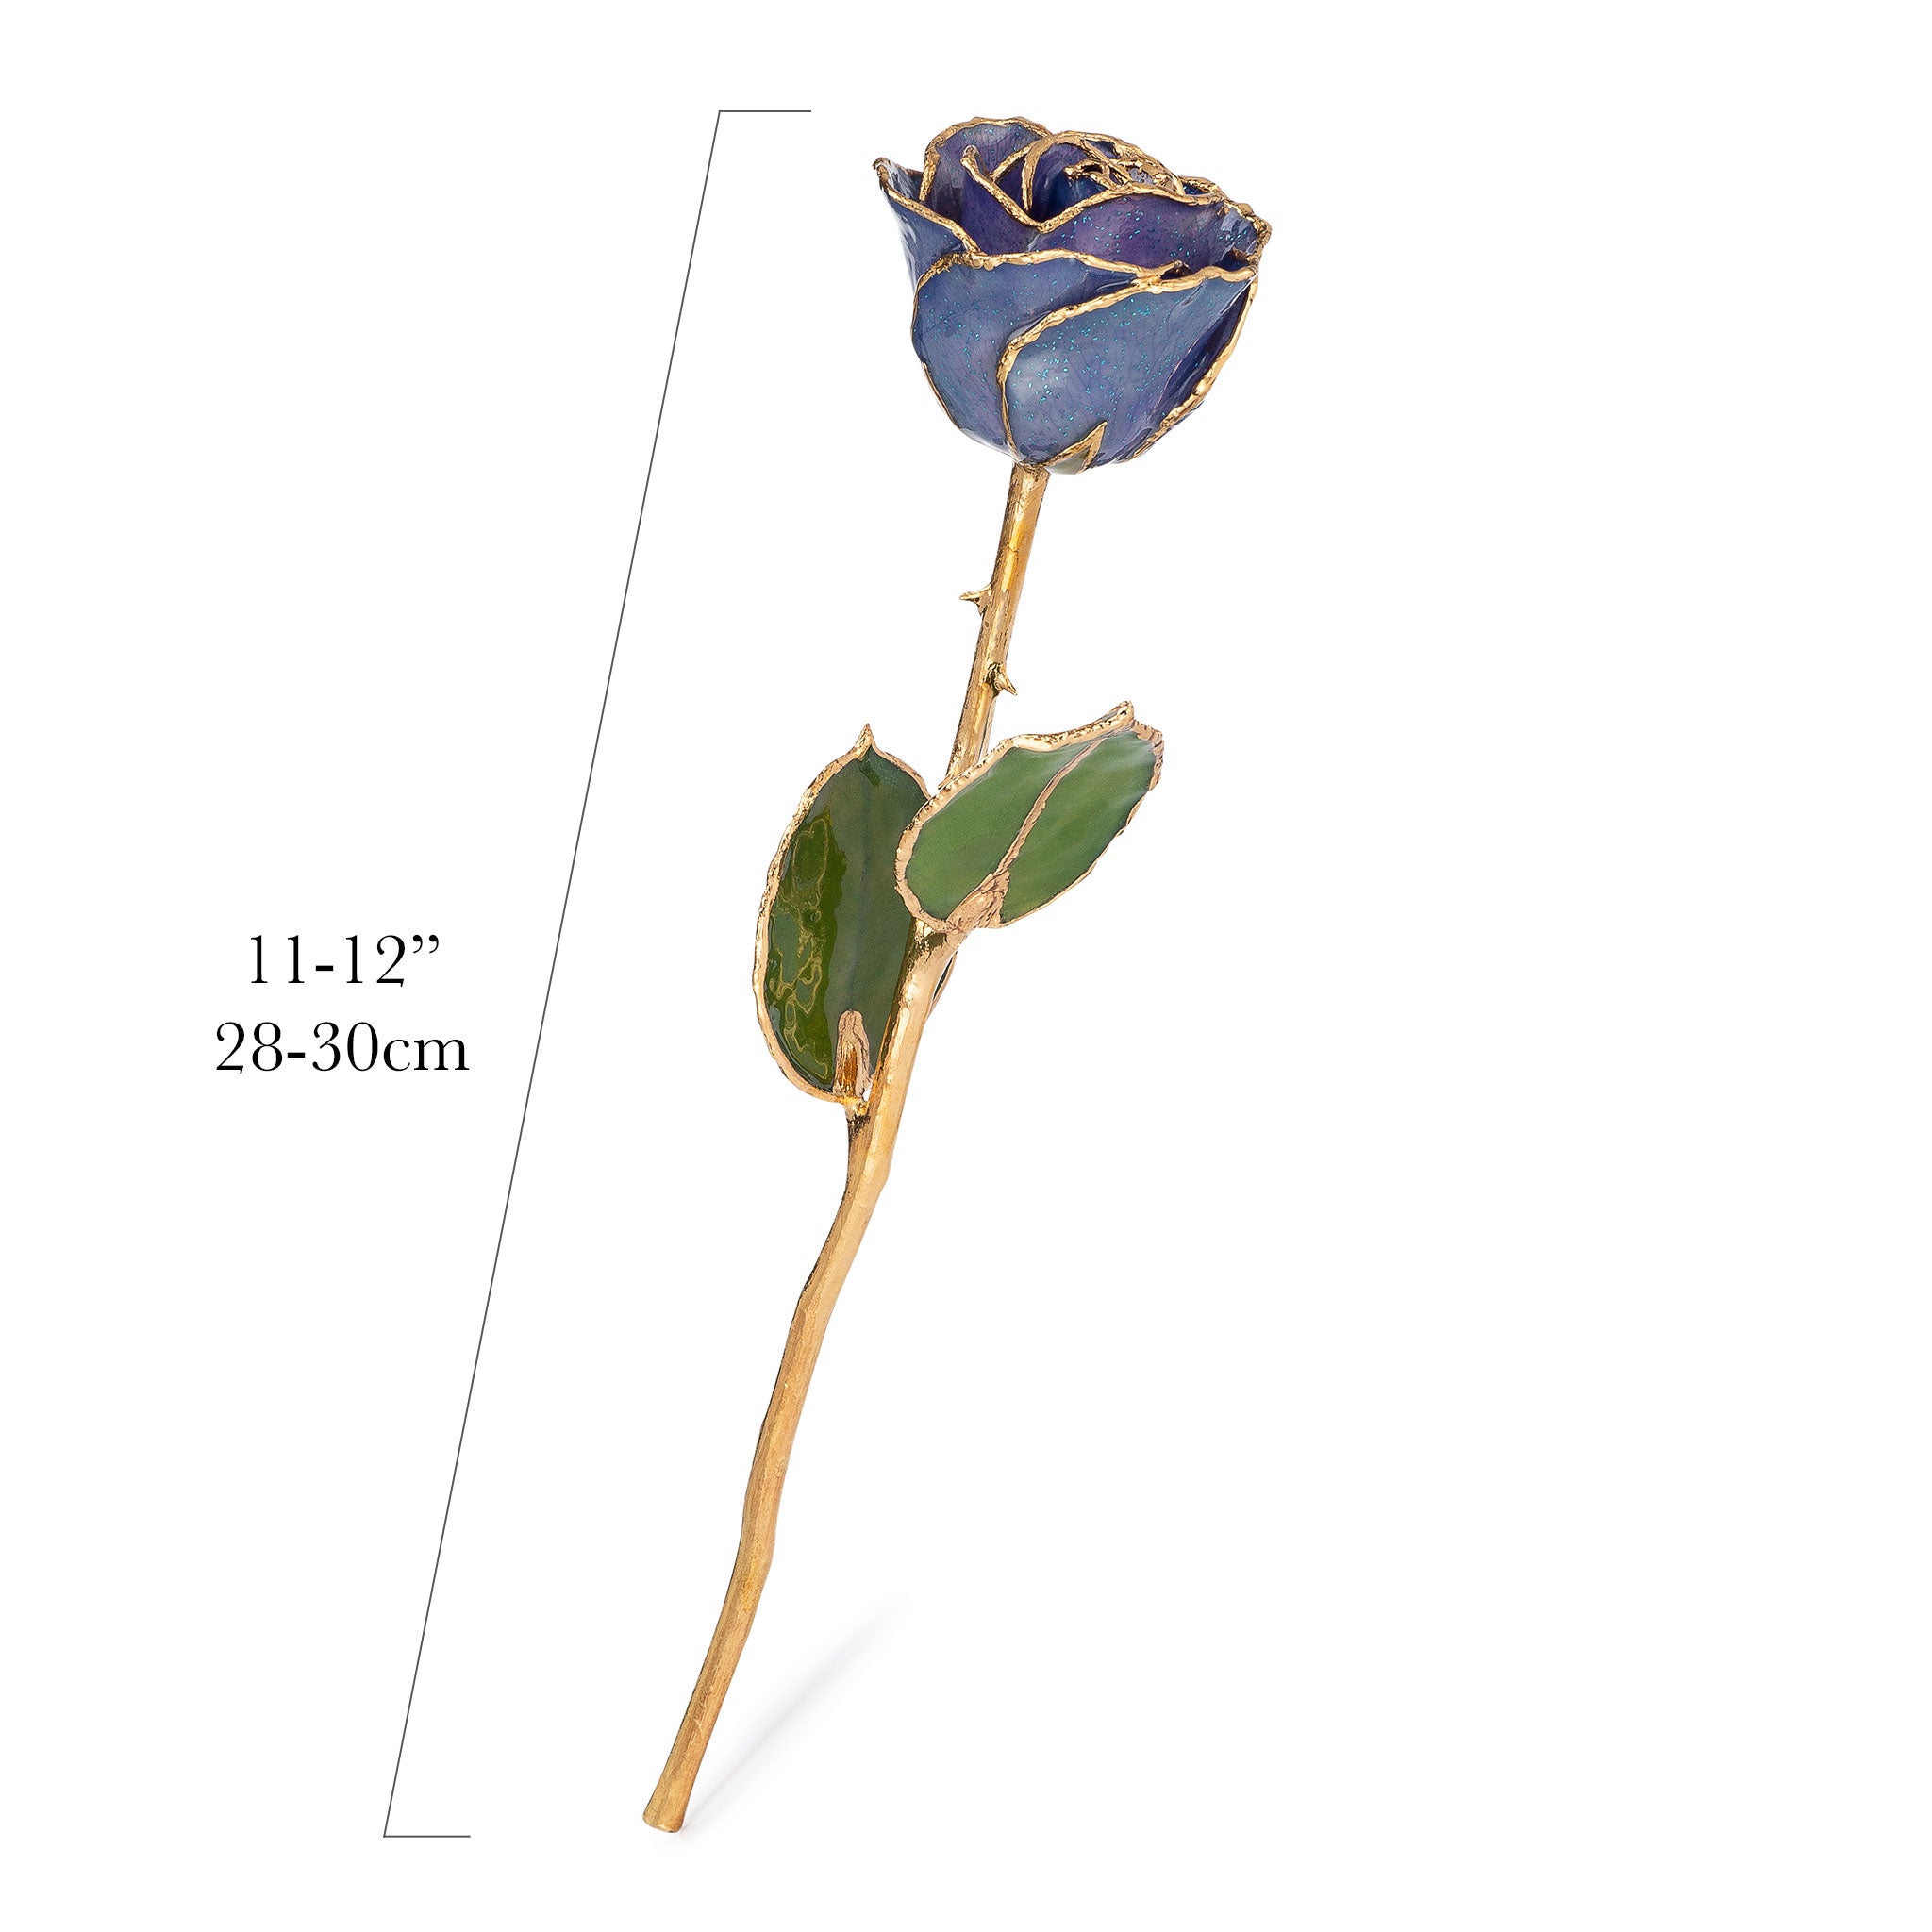 Custom Enchanted Rose - 24K Gold Diamond (April Birthstone) - The Forever  Rose